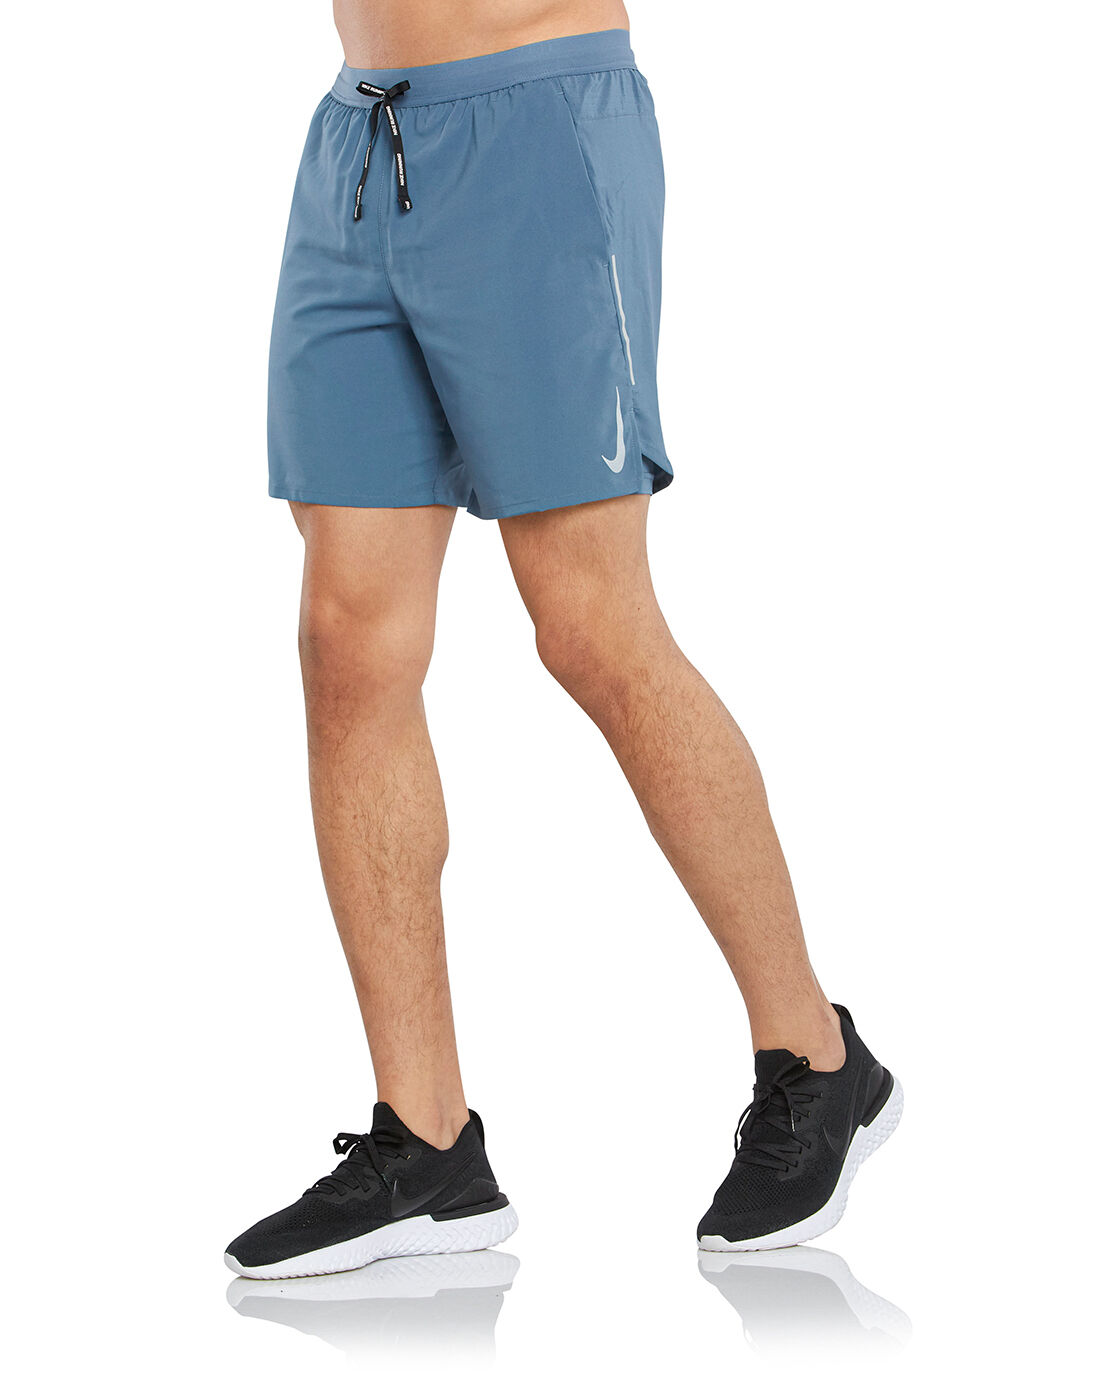 nike flex stride shorts 7 inch